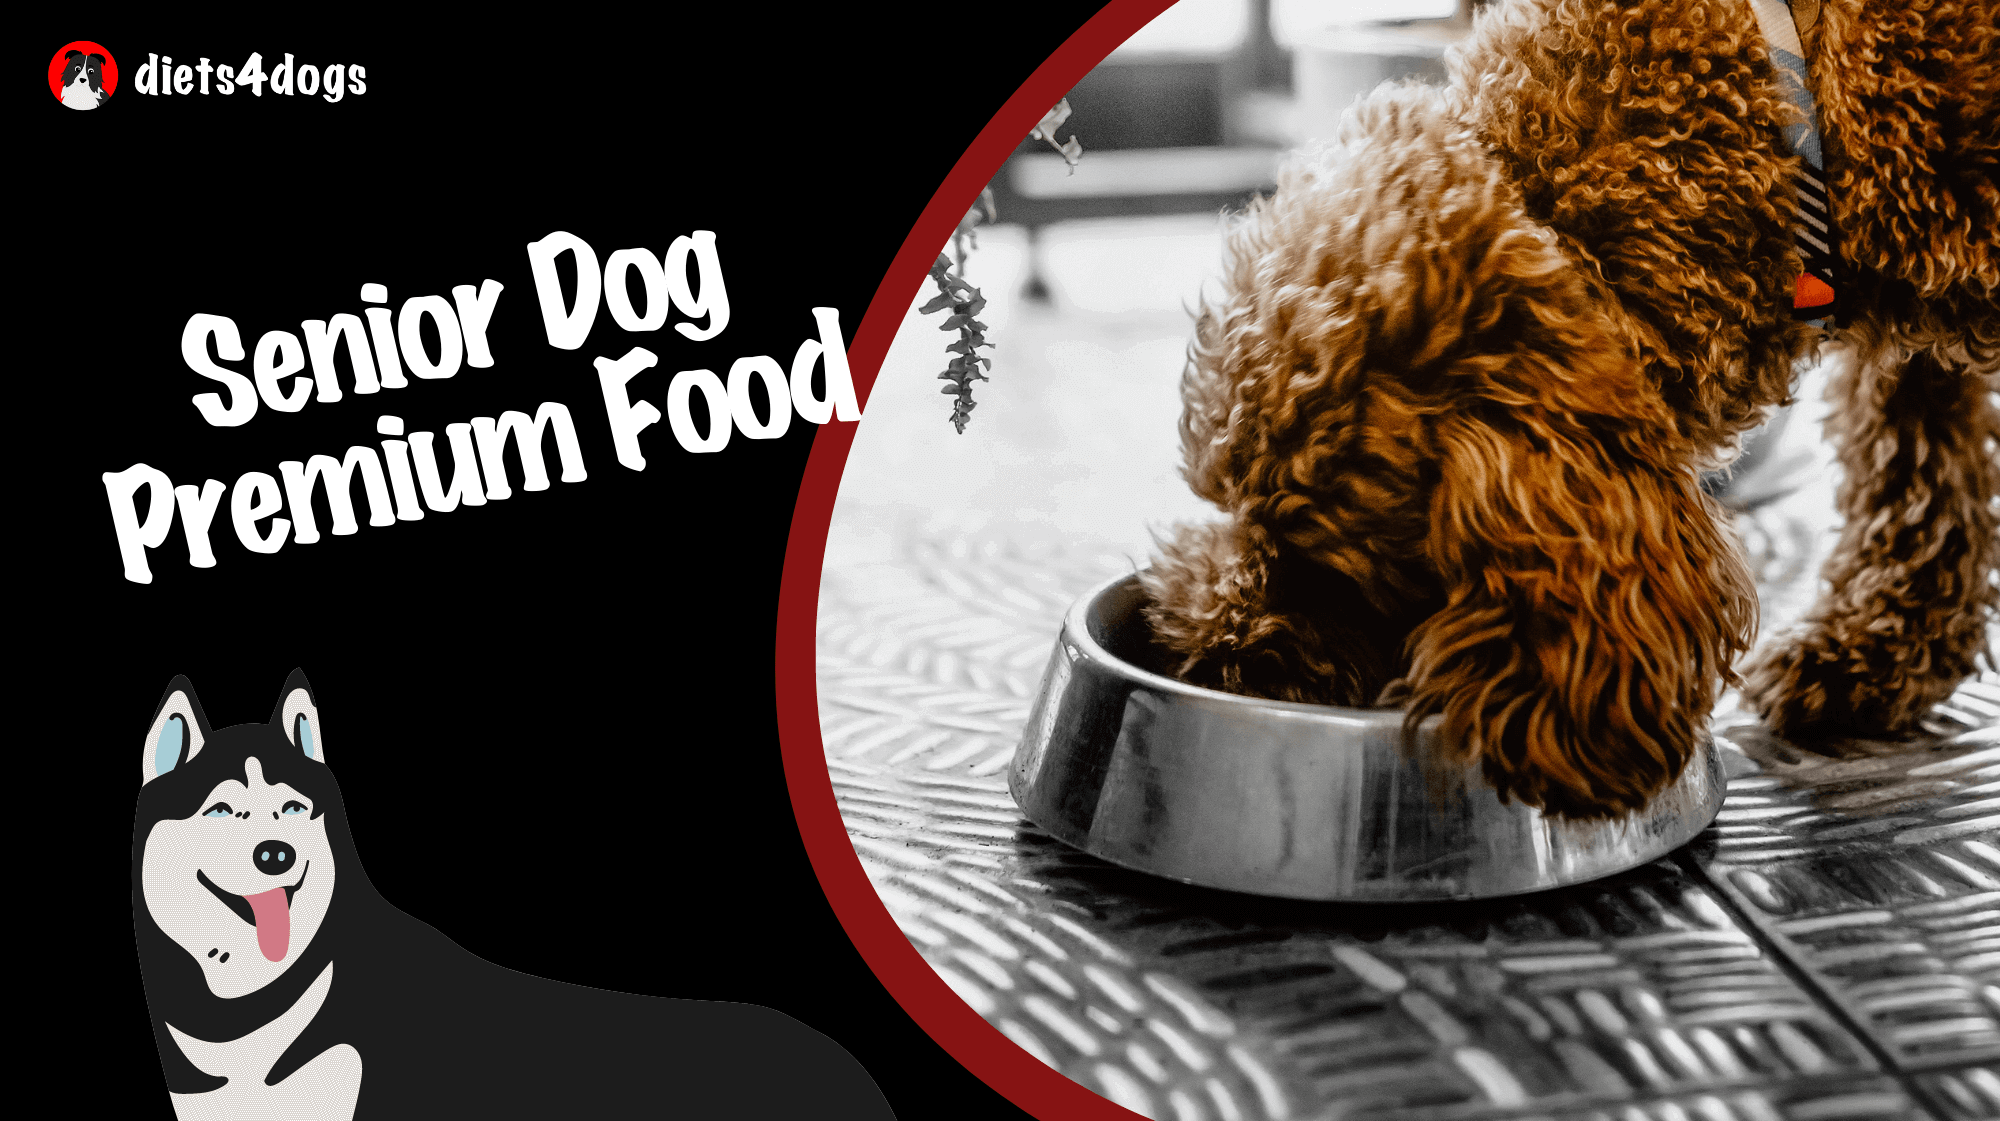 Senior Dog Premium Food